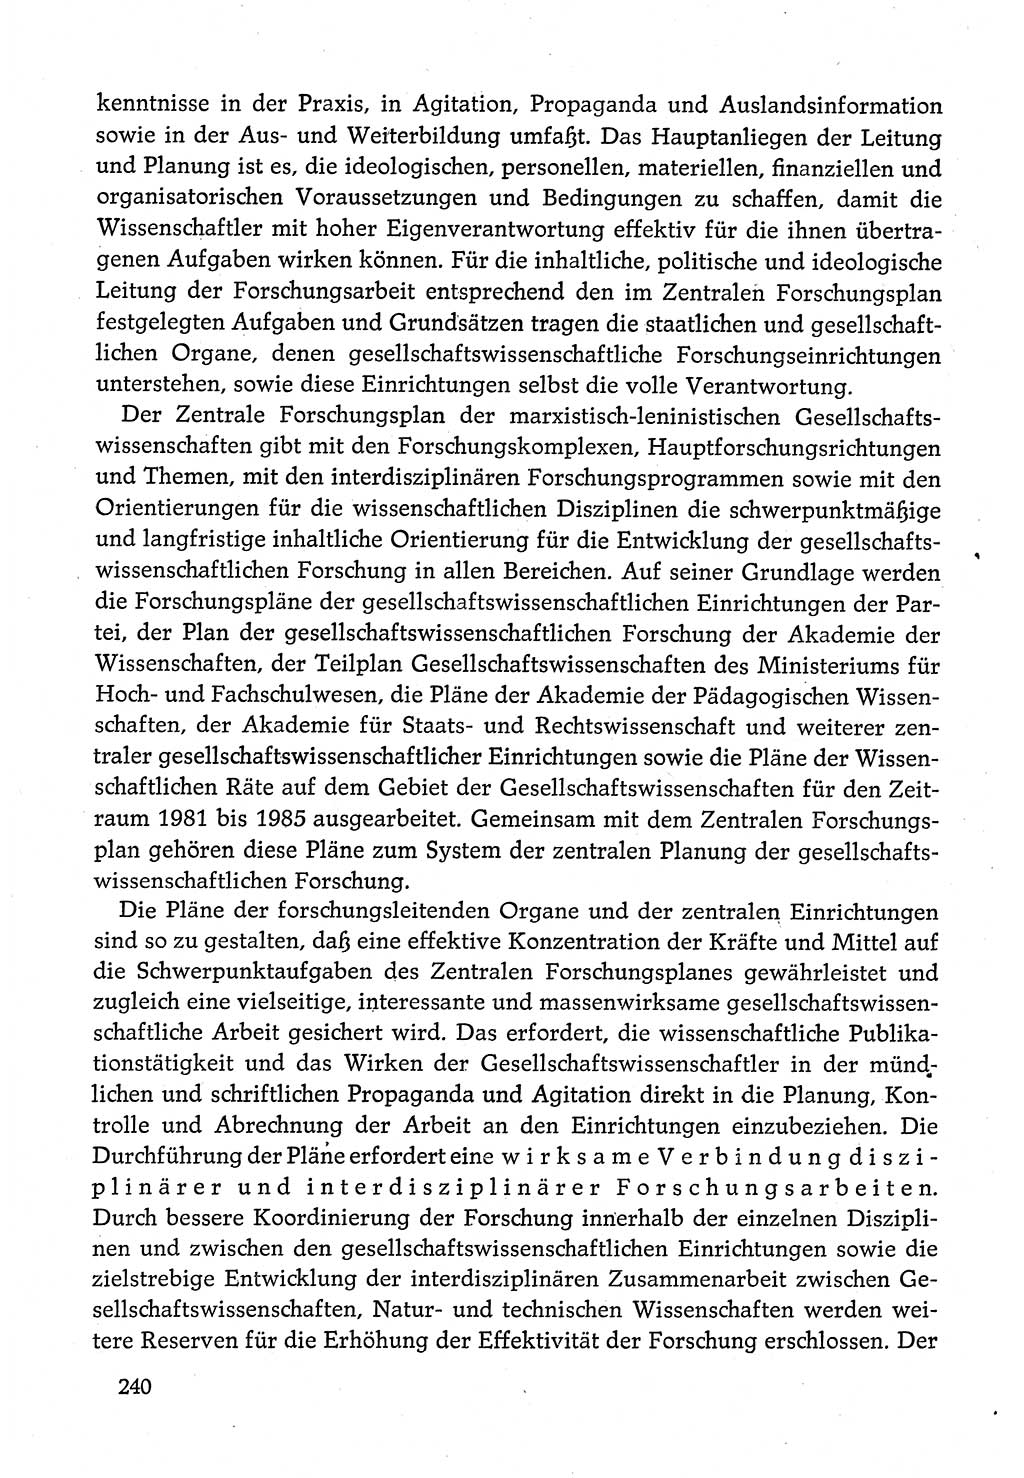 Dokumente der Sozialistischen Einheitspartei Deutschlands (SED) [Deutsche Demokratische Republik (DDR)] 1980-1981, Seite 240 (Dok. SED DDR 1980-1981, S. 240)